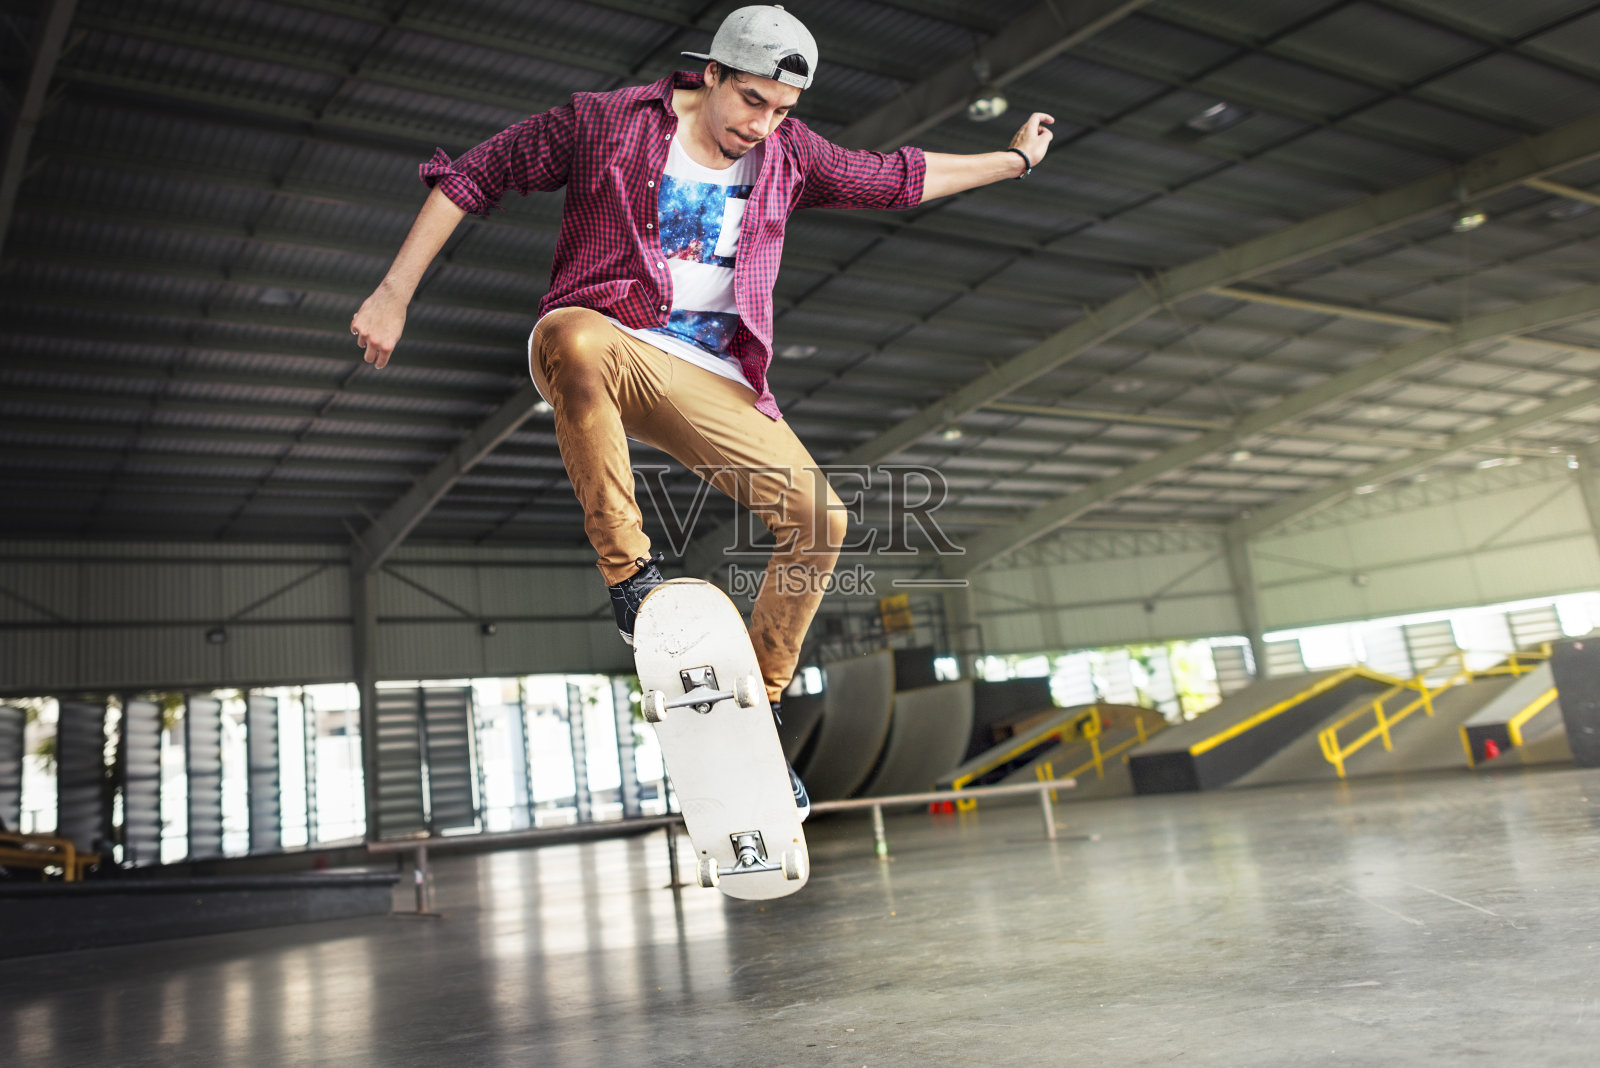 男孩滑板跳跃生活方式潮人概念照片摄影图片